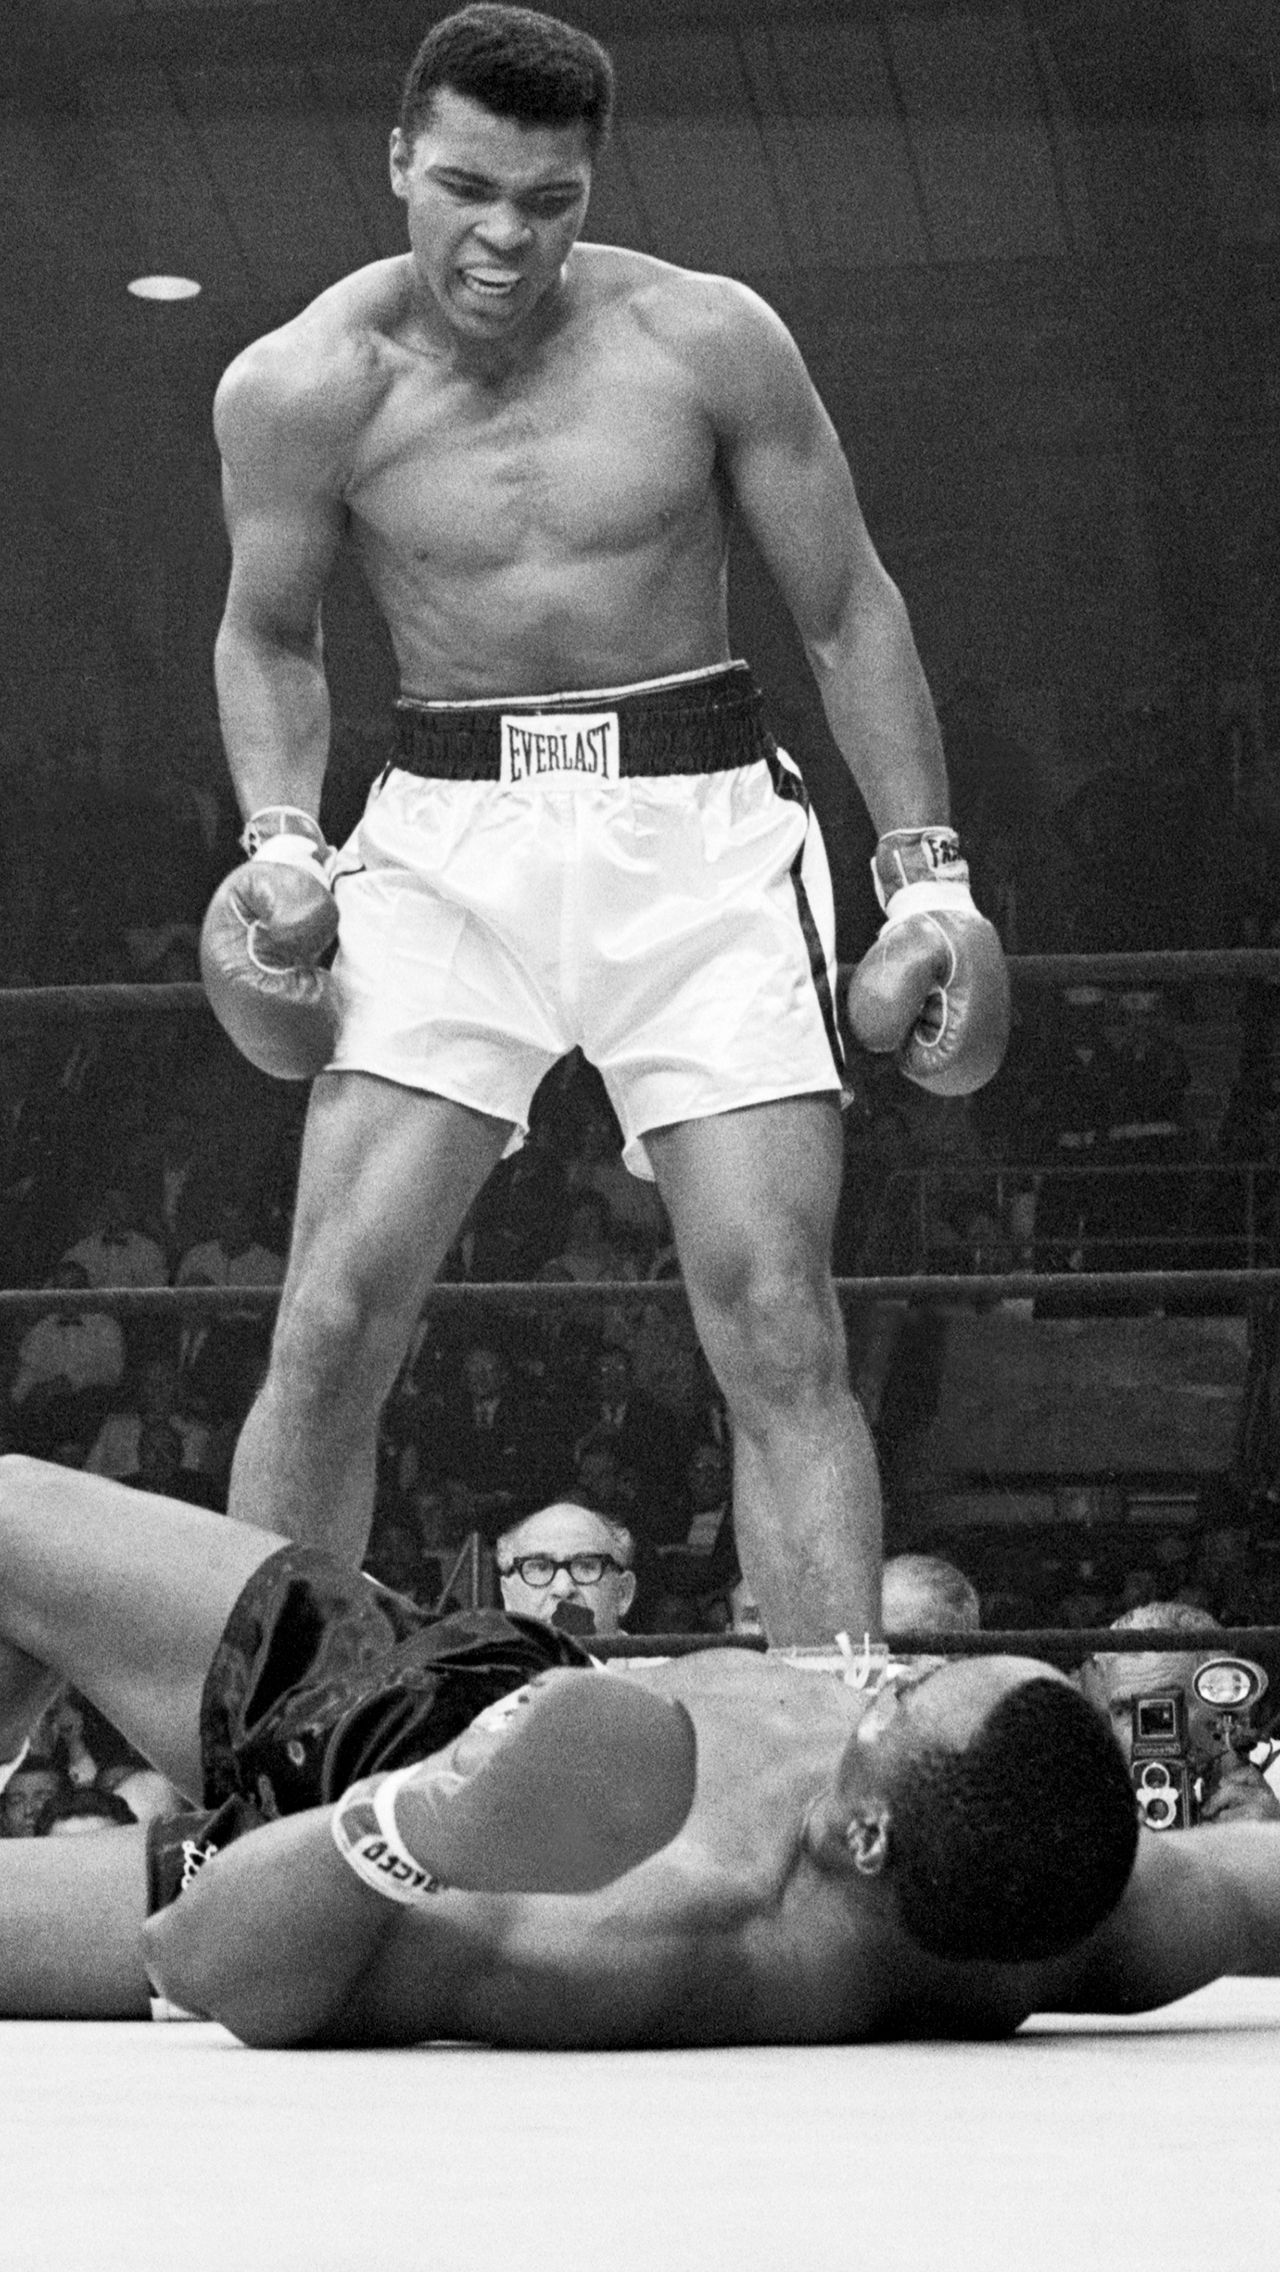 <b>Мохаммед Али:</b> <br/>
Чемпион ОИ-1960.<br/>
Чемпион мира по версии WBC и WBA в супертяжёлом весе.<br/>
Шестикратный обладатель звания «Боксёр года».<br/>
Лучший боксер десятилетия по версии журнала The Ring (1960-е).<br/>
Член Зала славы бокса и Международного зала боксёрской славы.<br/>
Спортсмен XX века по версии Sports Illustrated.